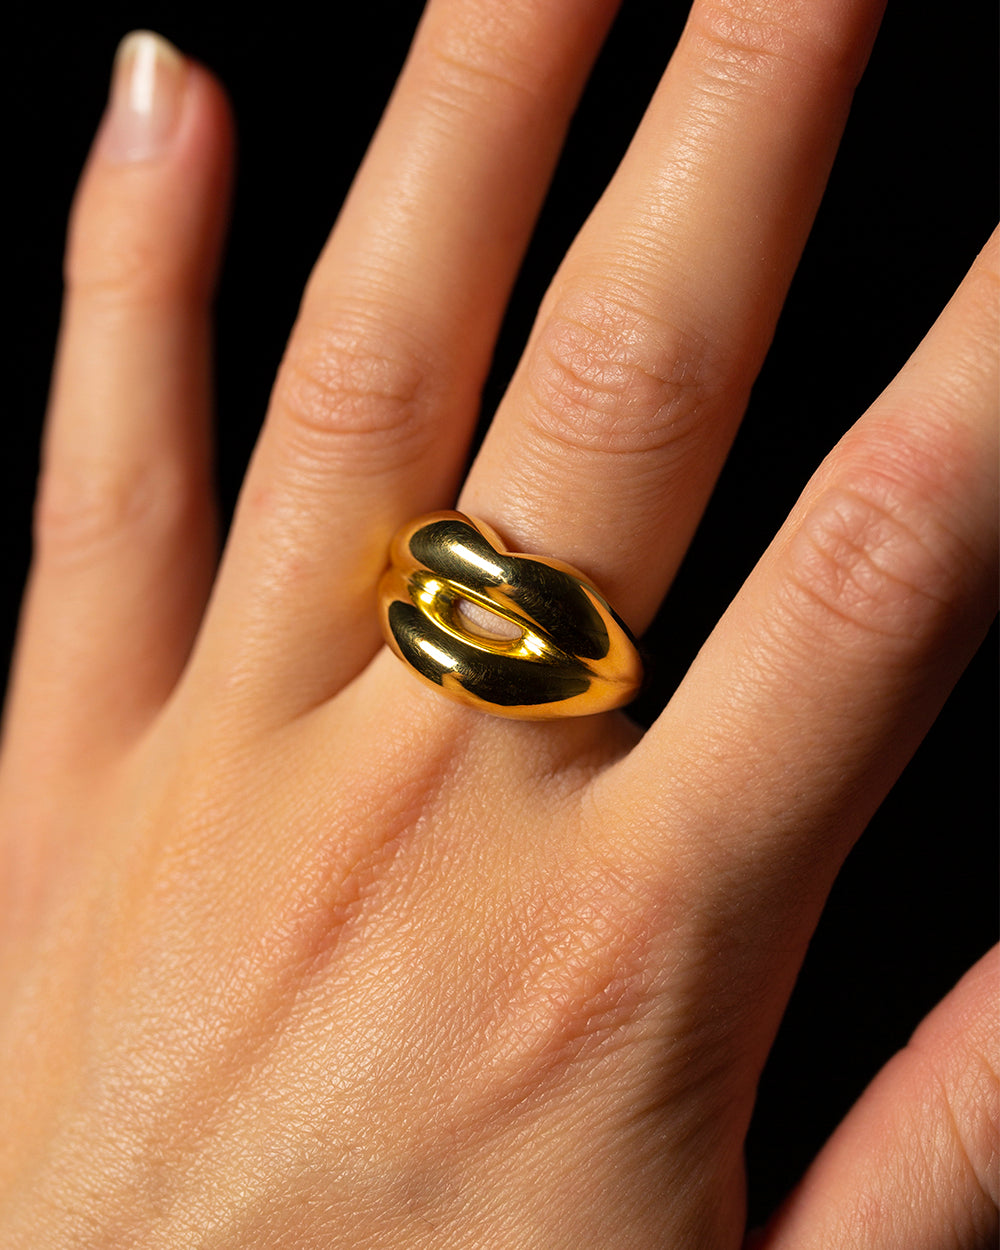 Gold Hotlips lip shaped ring on hand by Solange Azagury-PartridgeHotlips Lip Shaped 18 Karat Gold Ring by Solange Azagury-Partridge